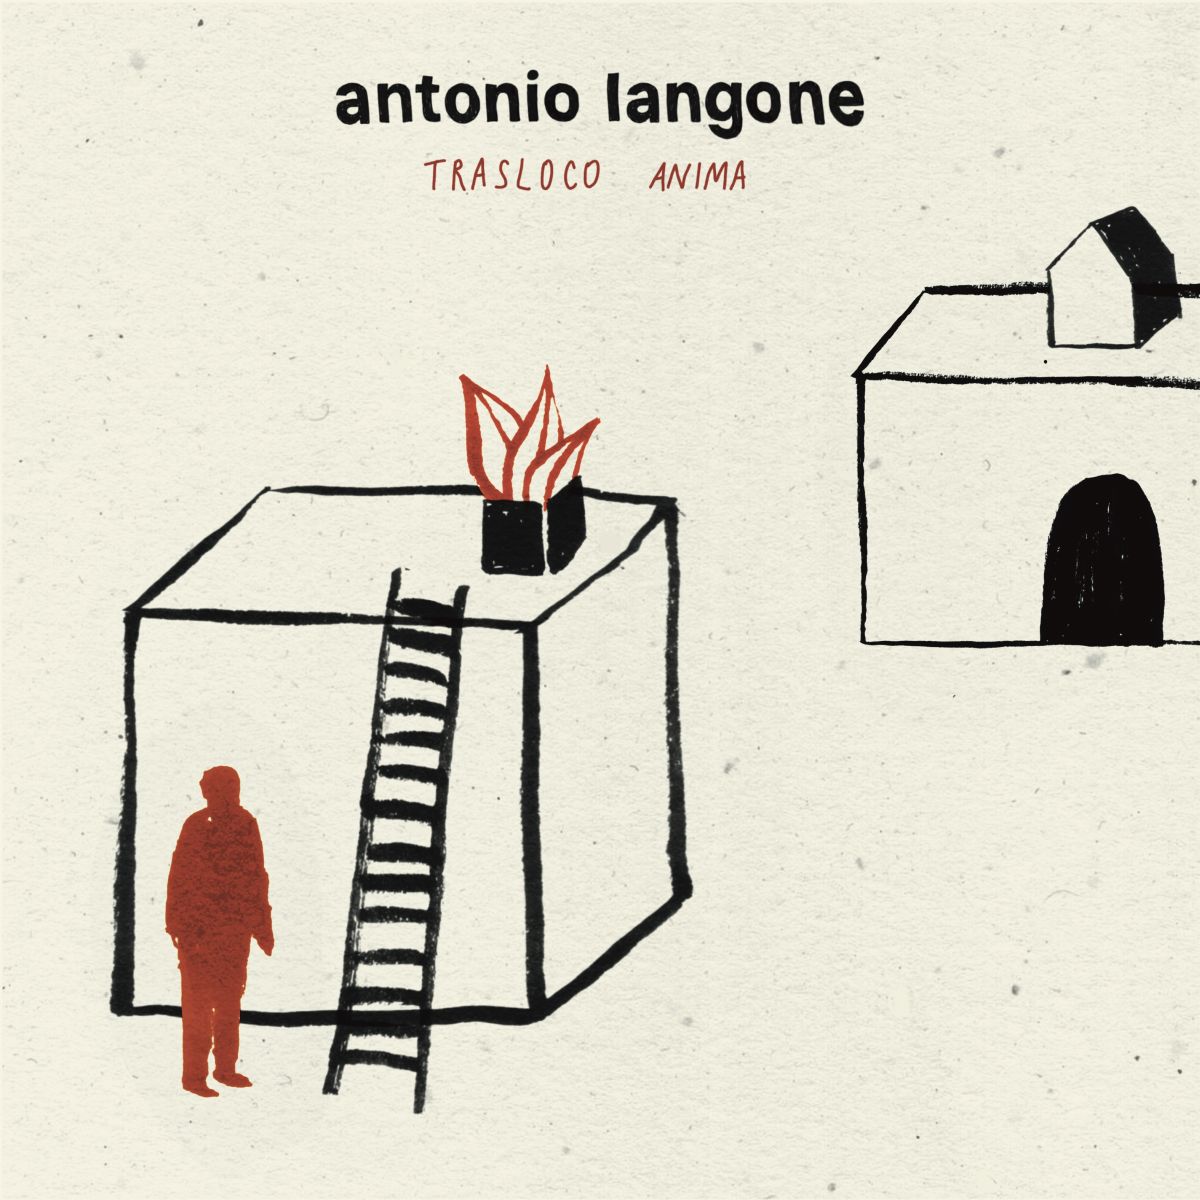 Antonio Lagone